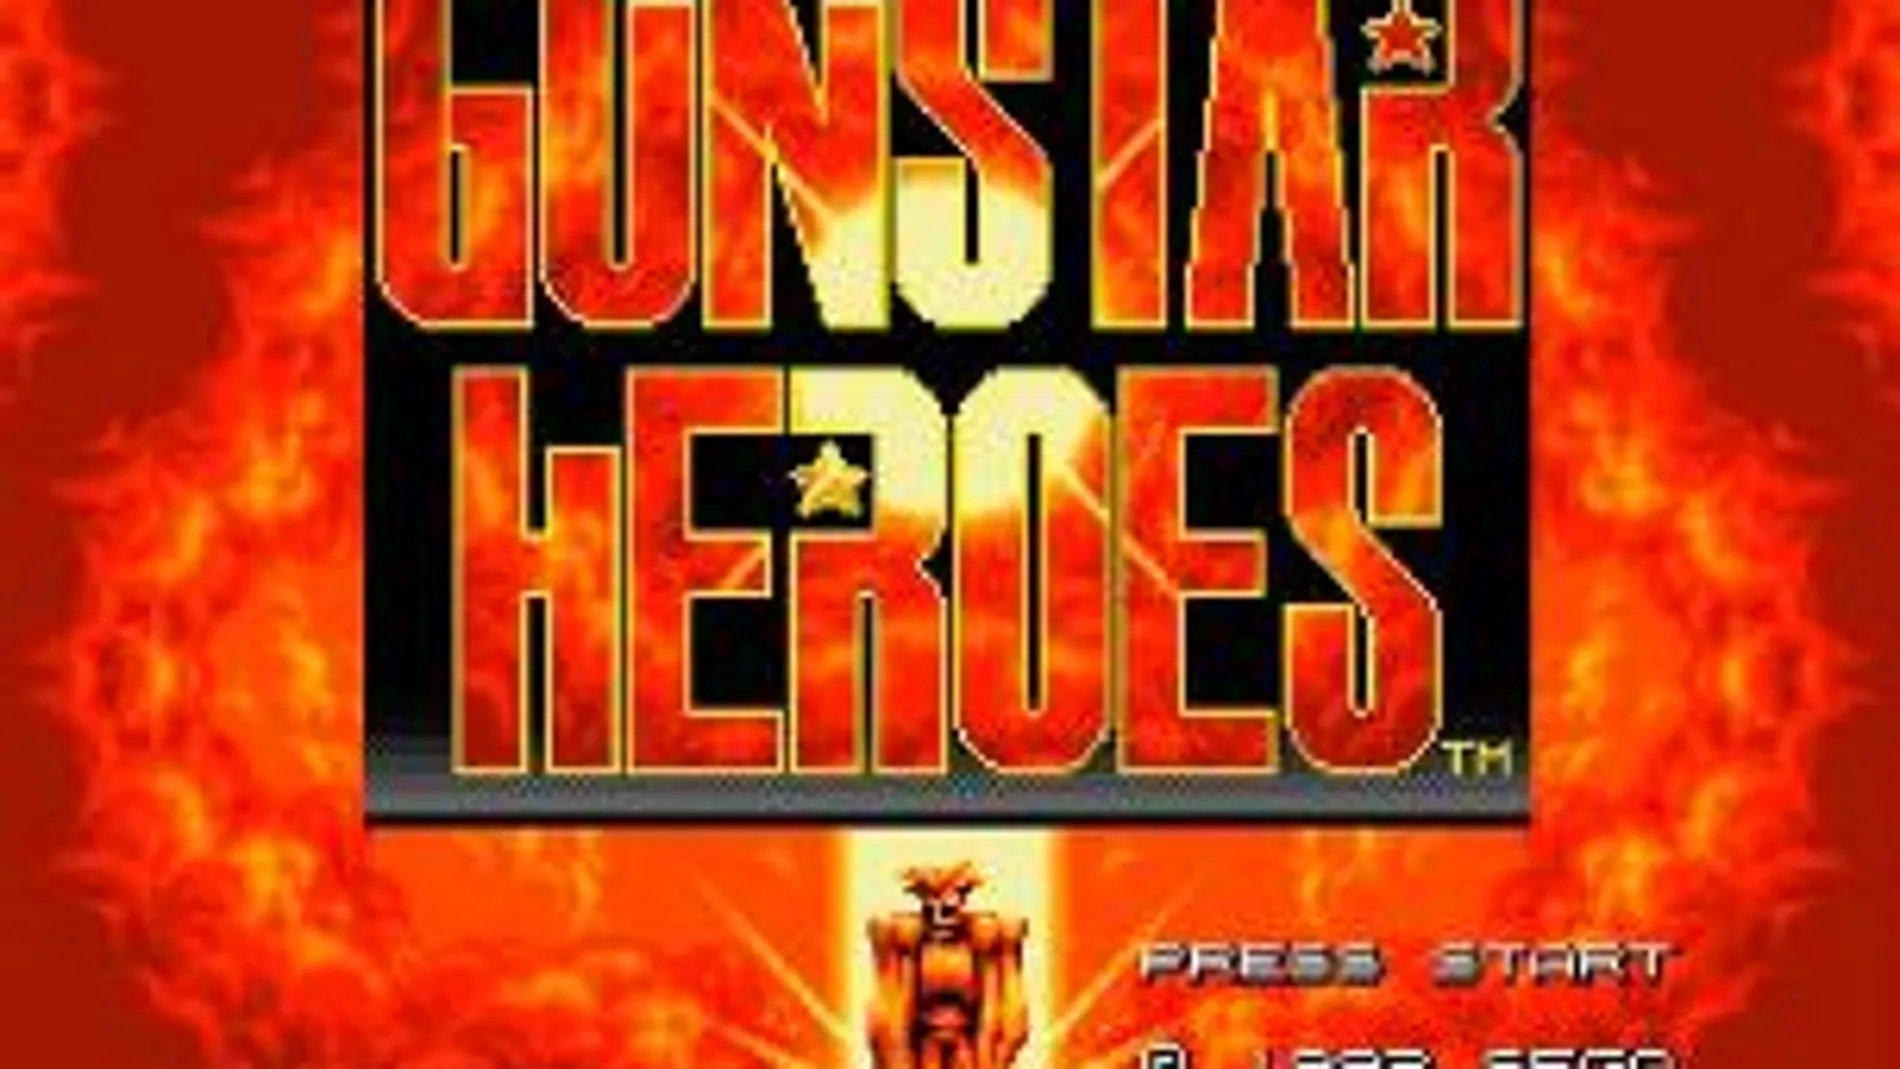 Ya puedes jugar gratis a Gunstar Heroes en dispositivos iPhone, iPad y Android